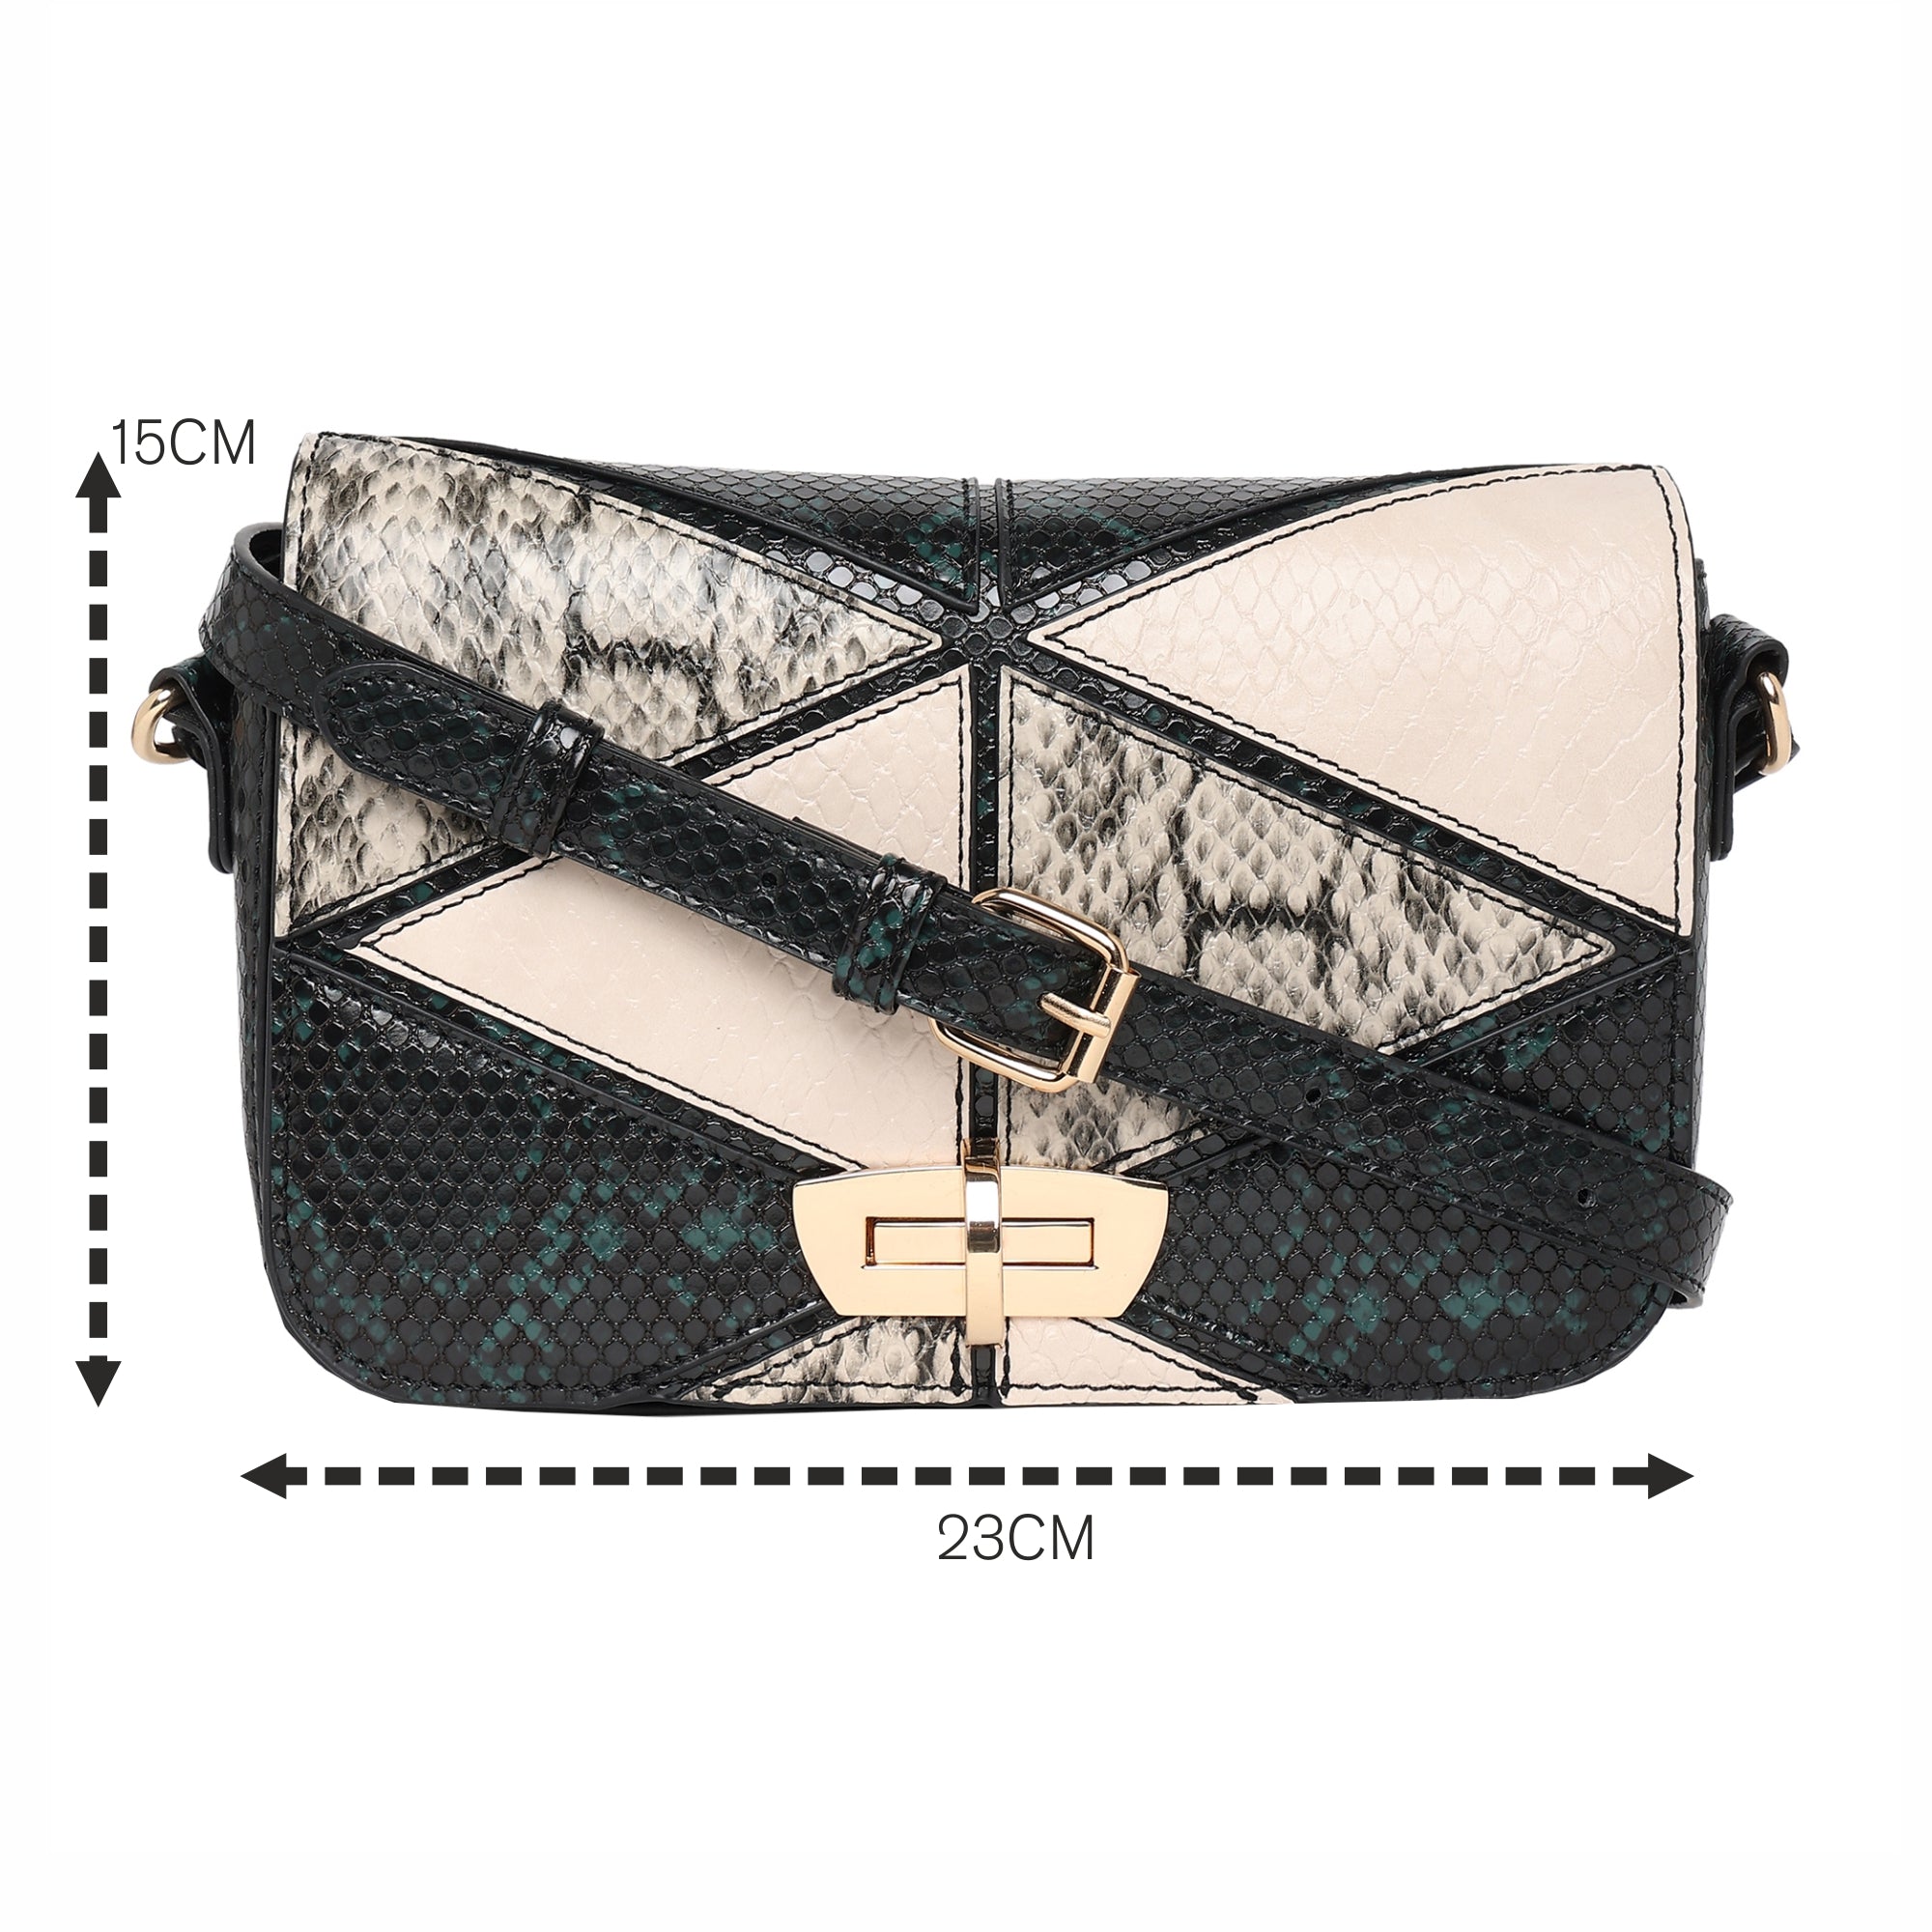 Louis Vuitton Non Leather Handbags